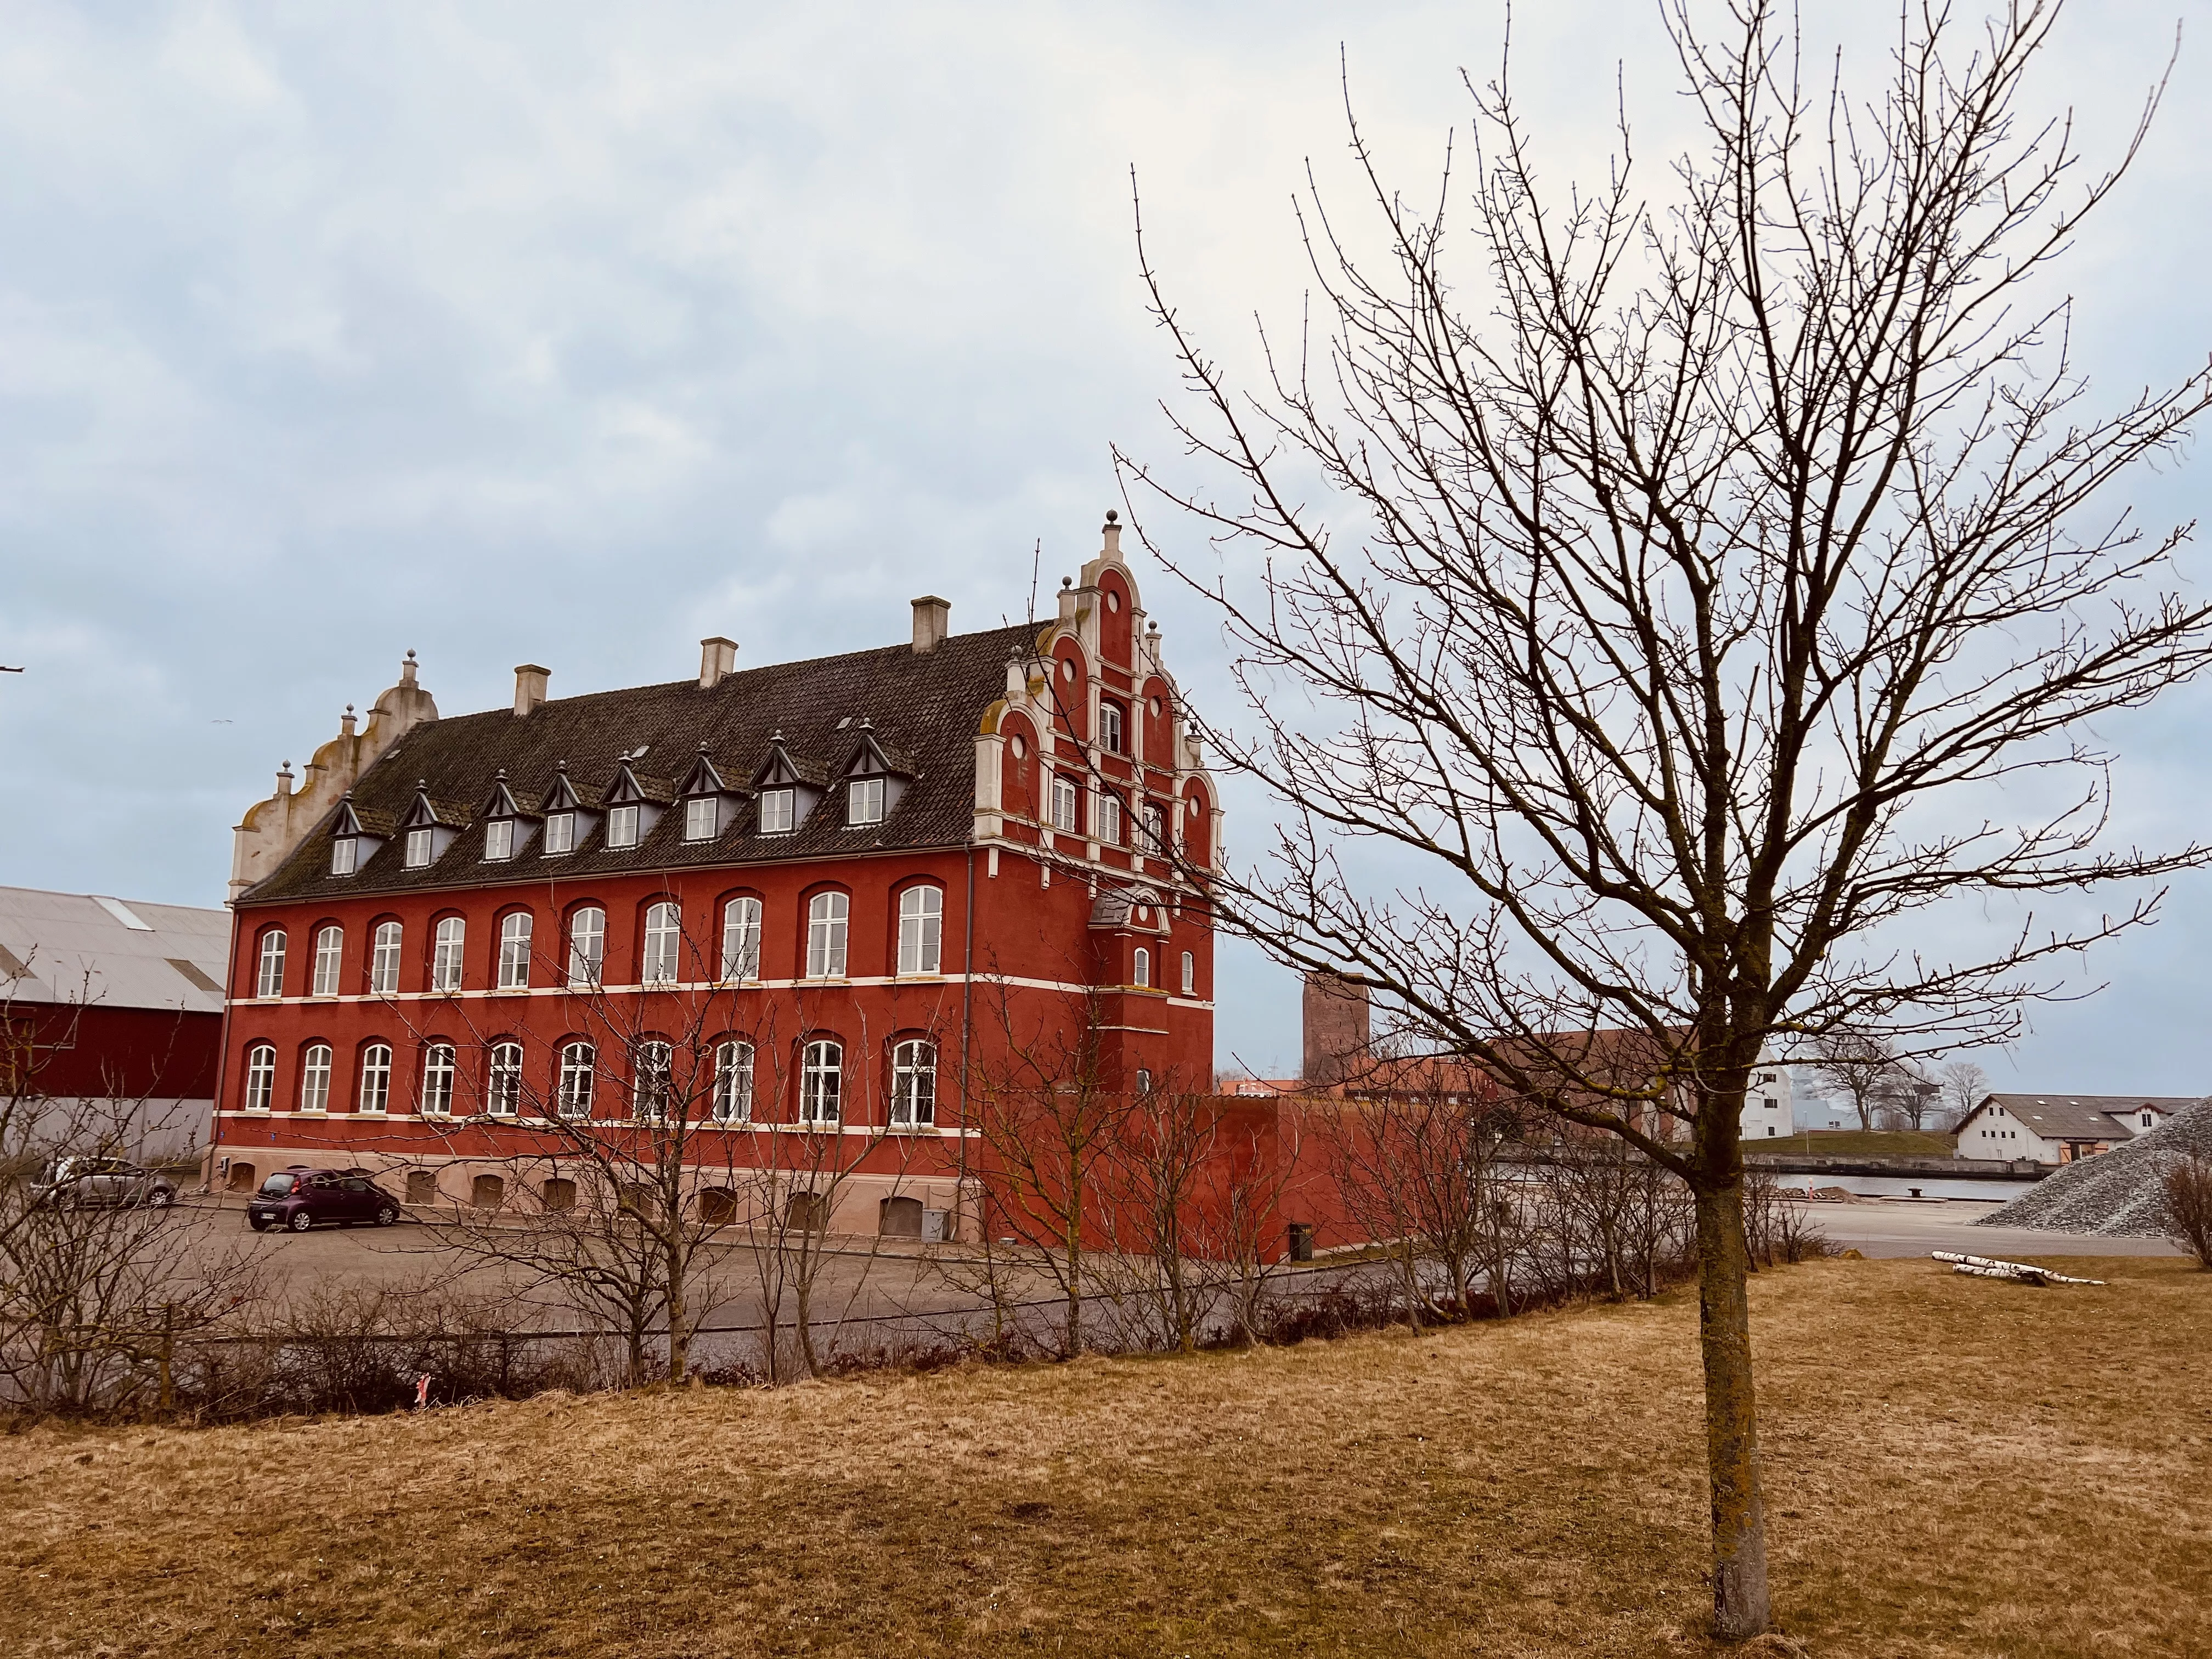 Billede af Korsør Station - Station er nedrevet, men Korsør Station har ligget her til venstre for den røde bygning.